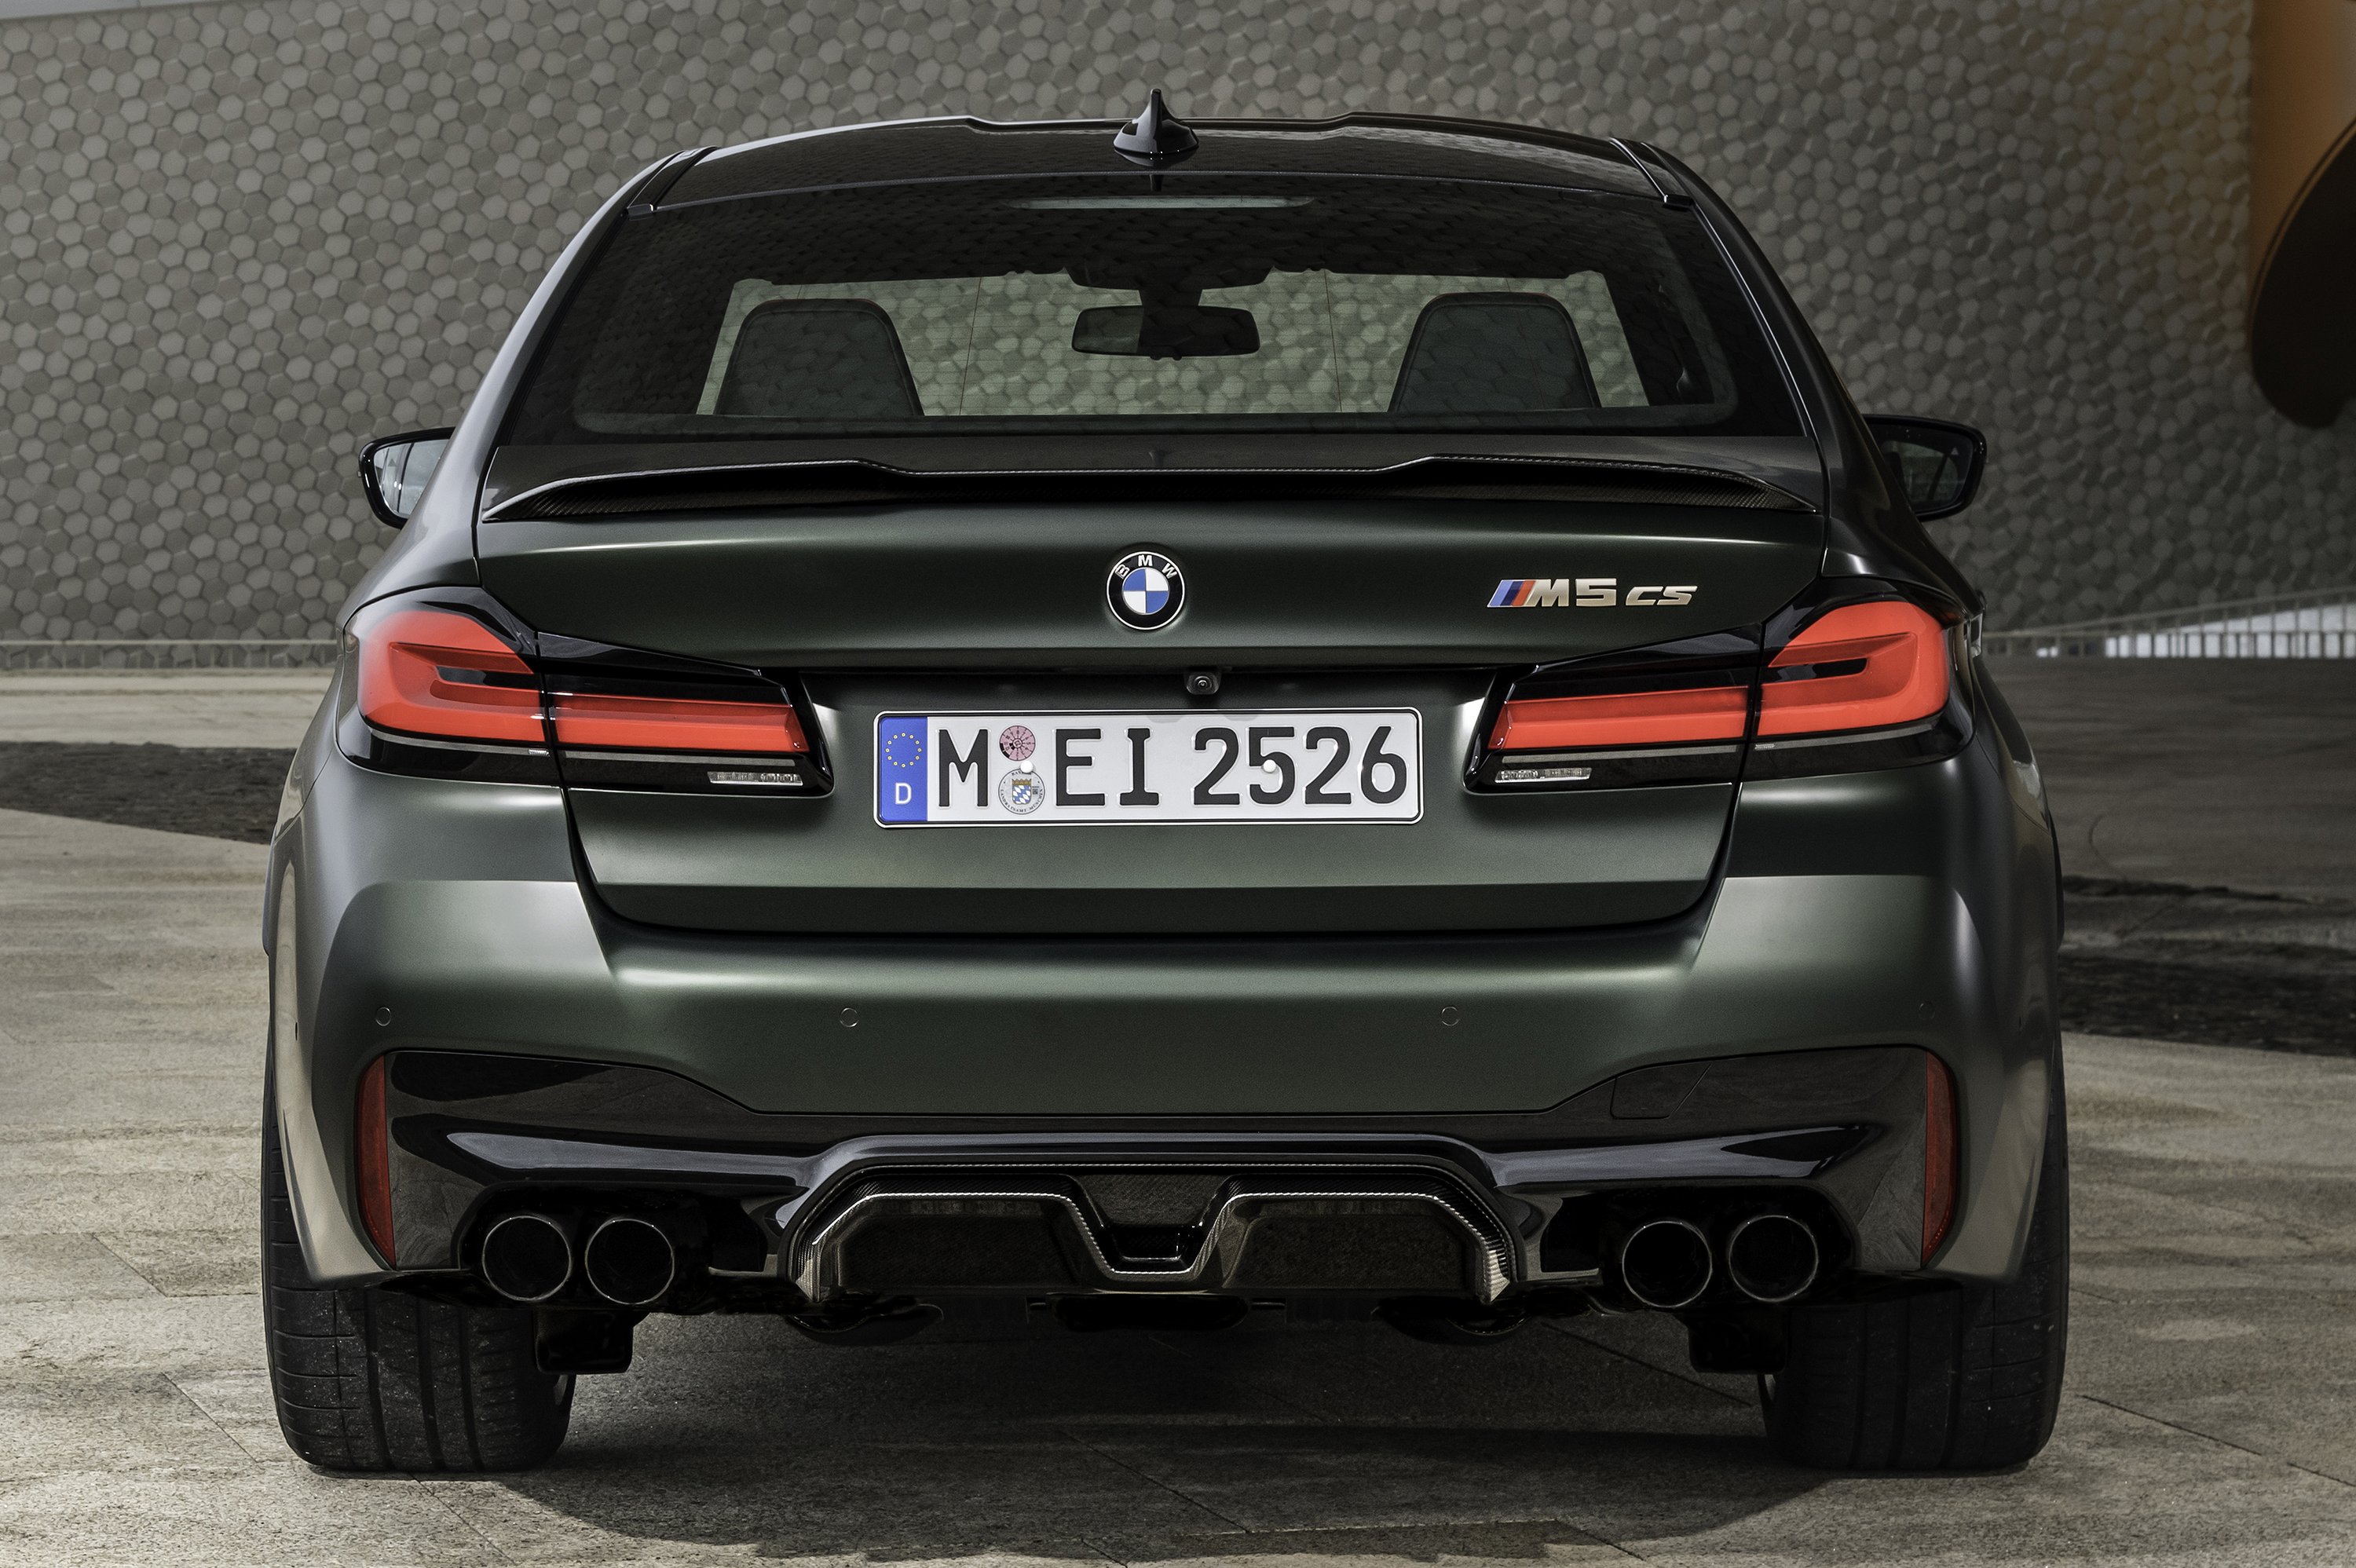 Elkészült minden idők legerősebb BMW M modellje 13